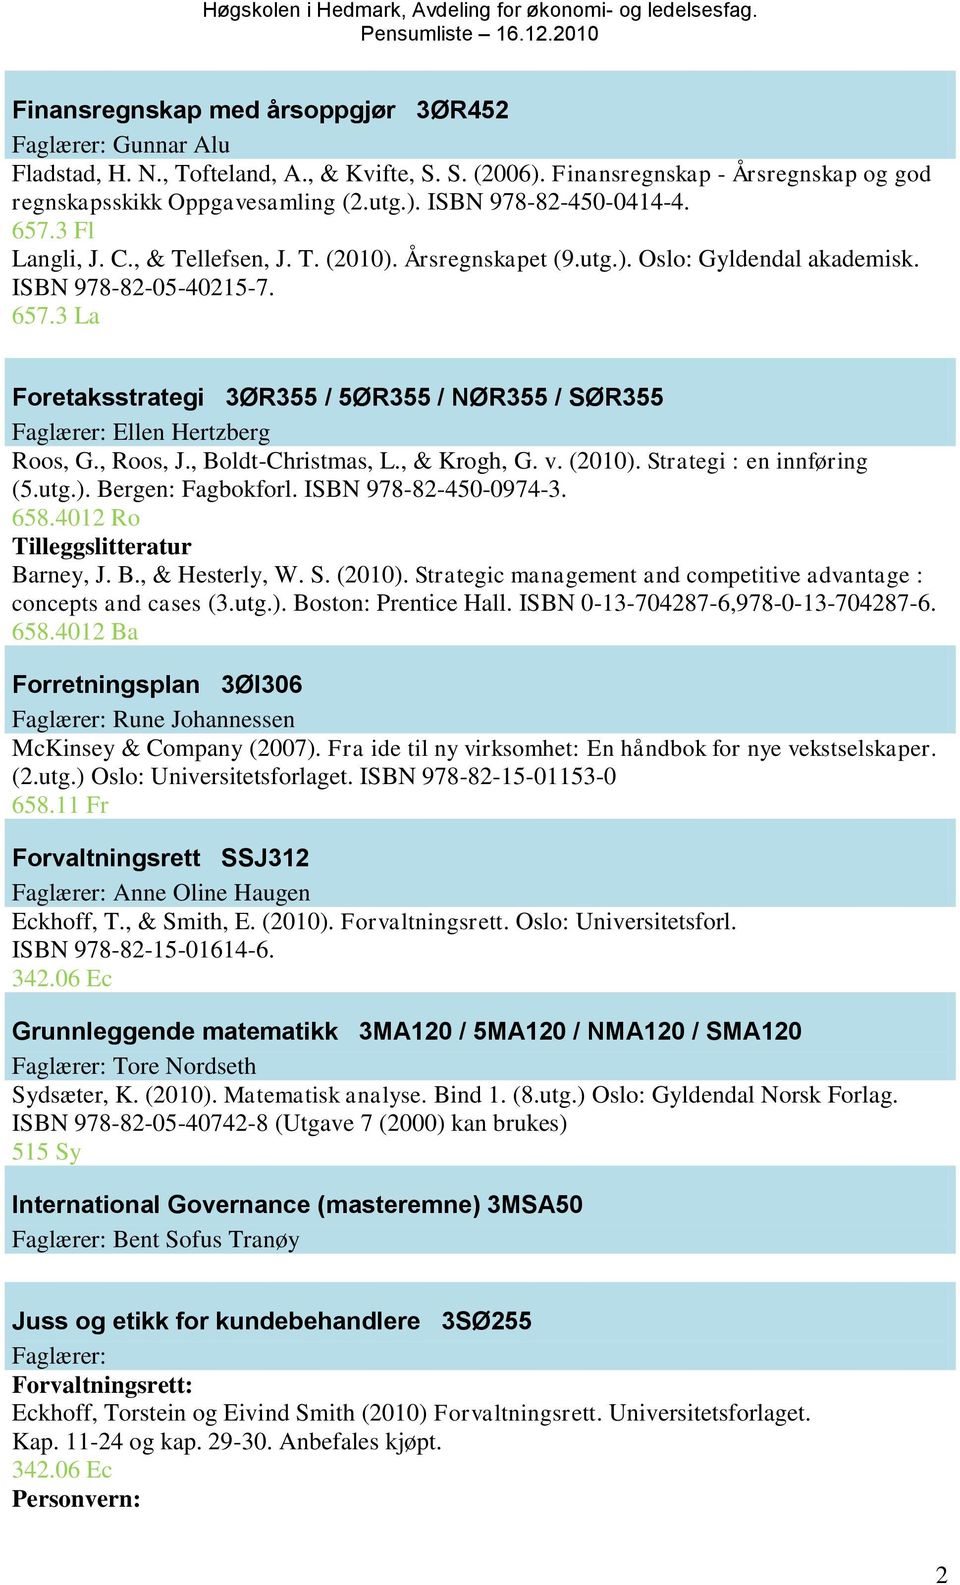 3 La Foretaksstrategi 3ØR355 / 5ØR355 / NØR355 / SØR355 Faglærer: Ellen Hertzberg Roos, G., Roos, J., Boldt-Christmas, L., & Krogh, G. v. (2010). Strategi : en innføring (5.utg.). Bergen: Fagbokforl.